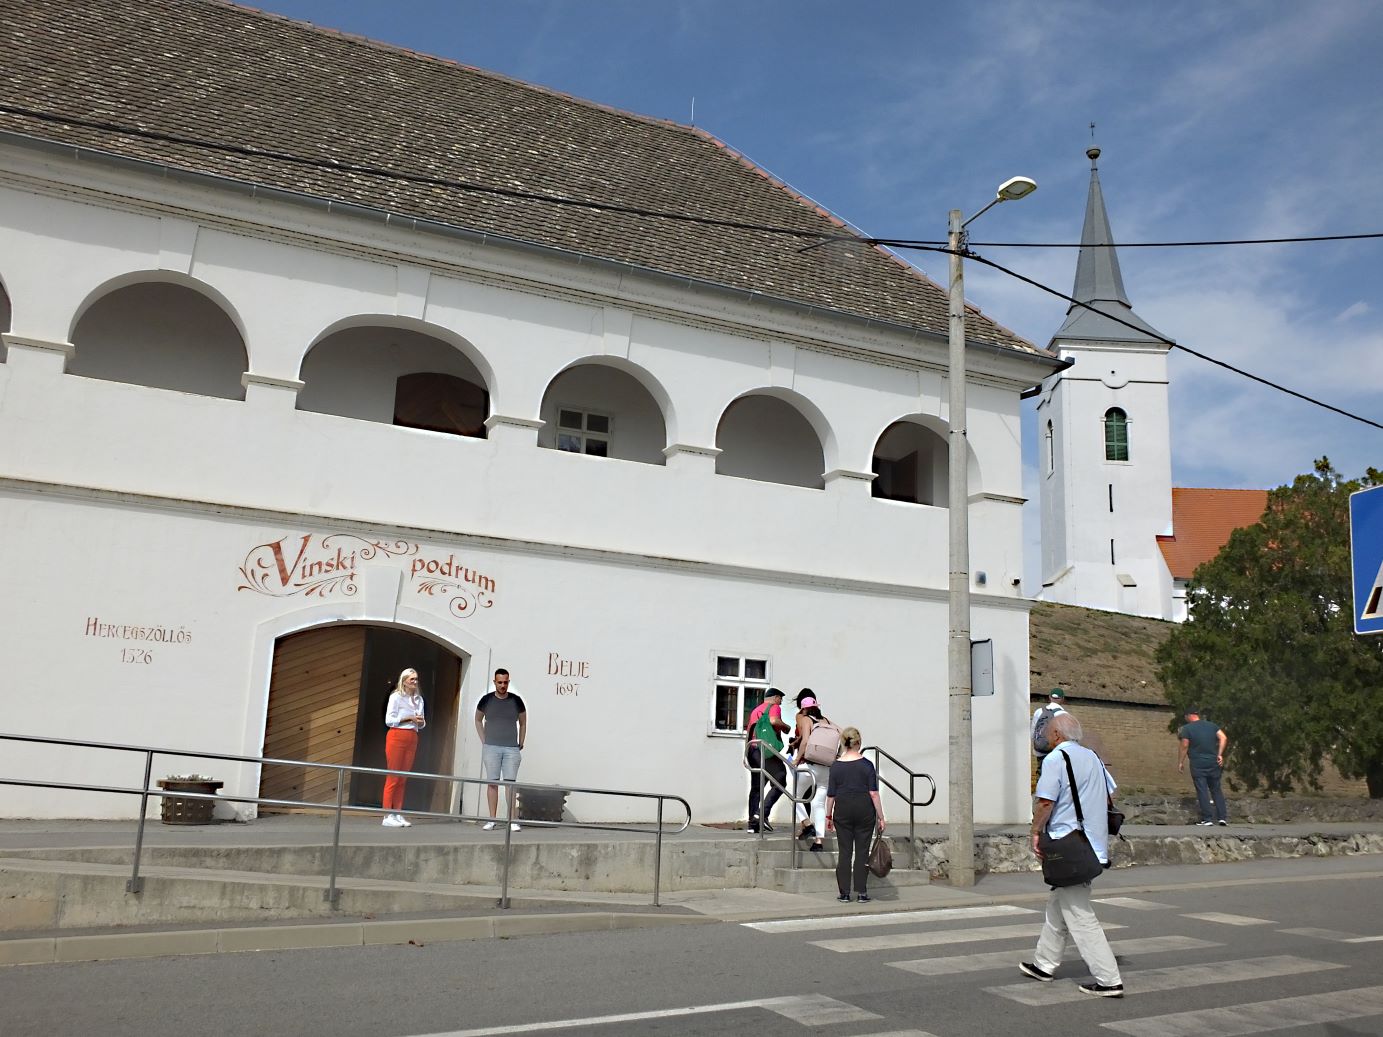 Zum bedeutenden Weingut Belje gehört auch dieser historische Weinkeller-Gebäude